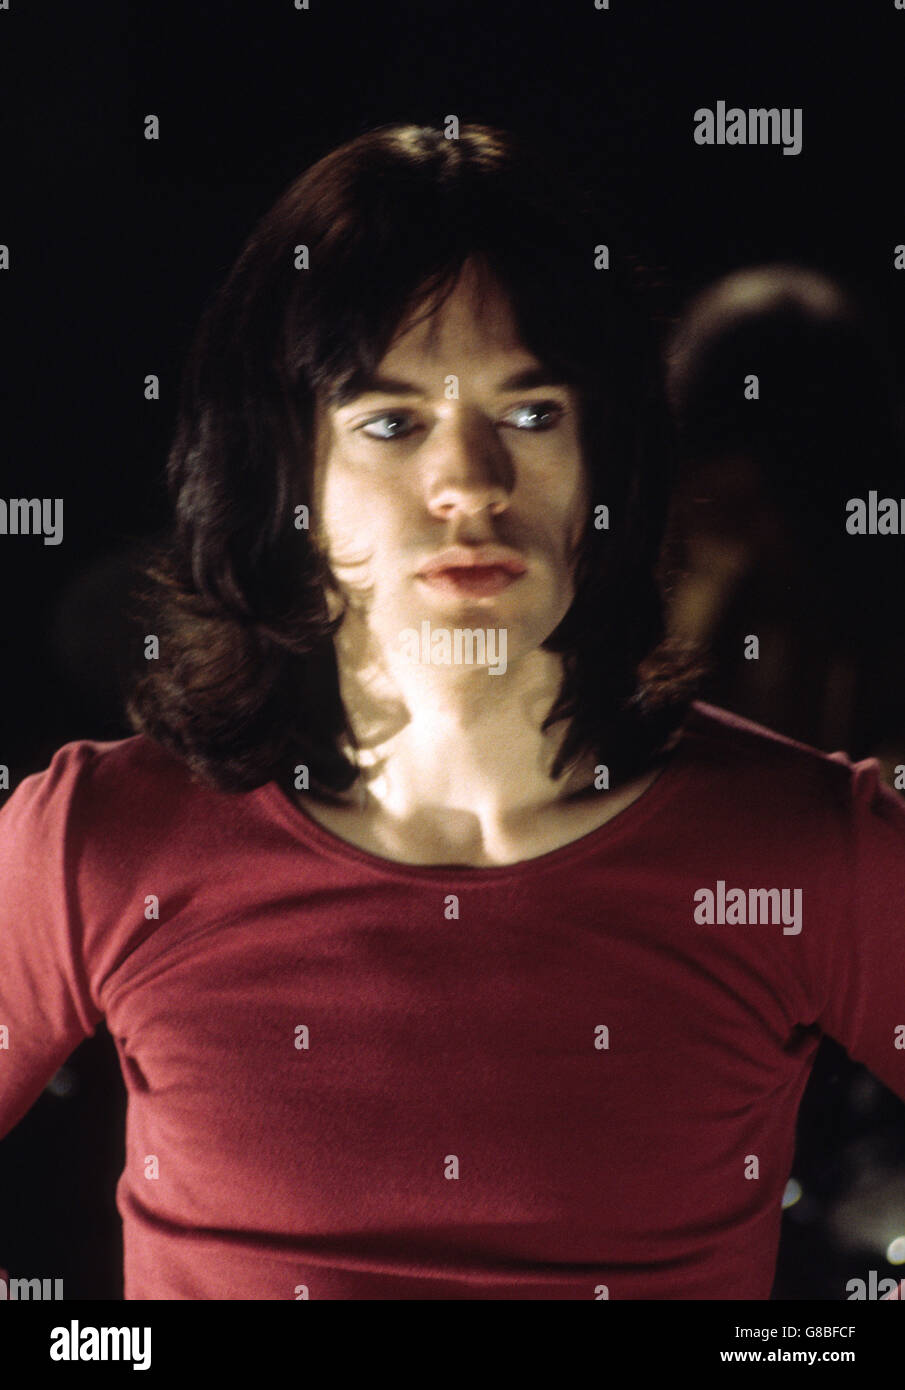 Mick Jagger, chanteur avec The Rolling Stones, photographié comme film de groupe aux studios LWT (London Weekend Television) à Londres. Banque D'Images